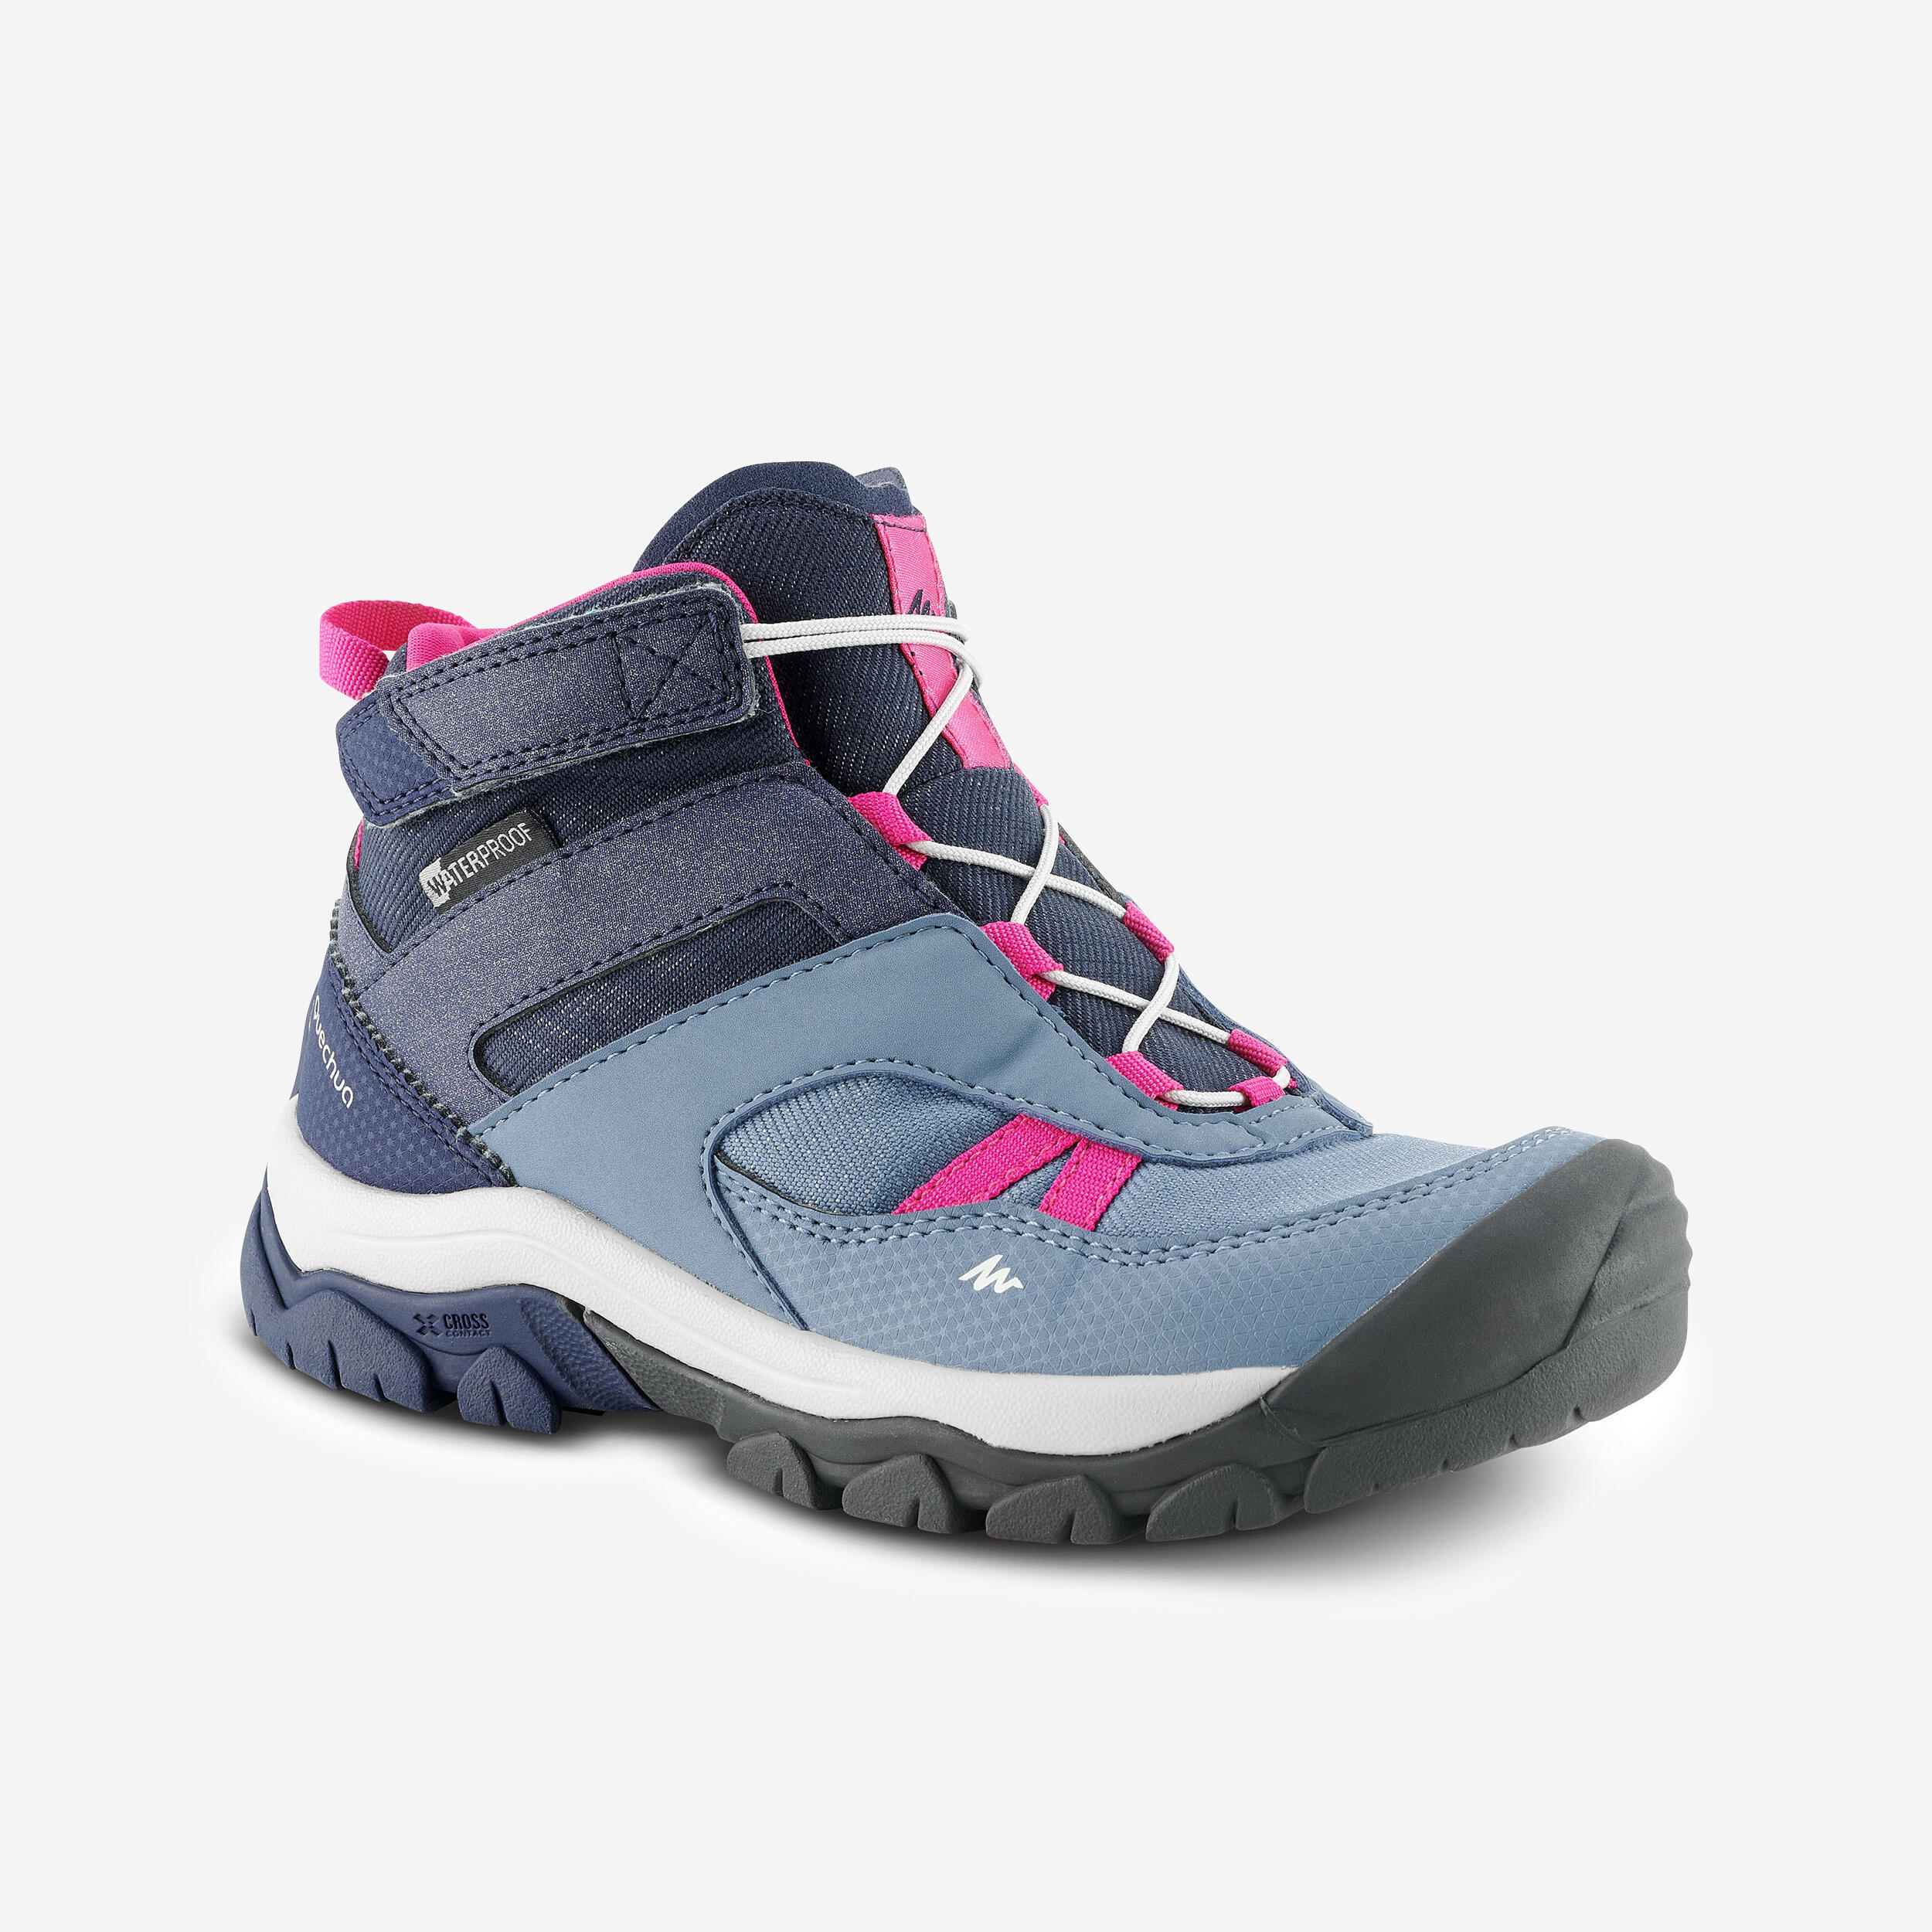 Children's waterproof walking shoes - CROSSROCK MID blue - size jr. 10 - ad. 2 1/9